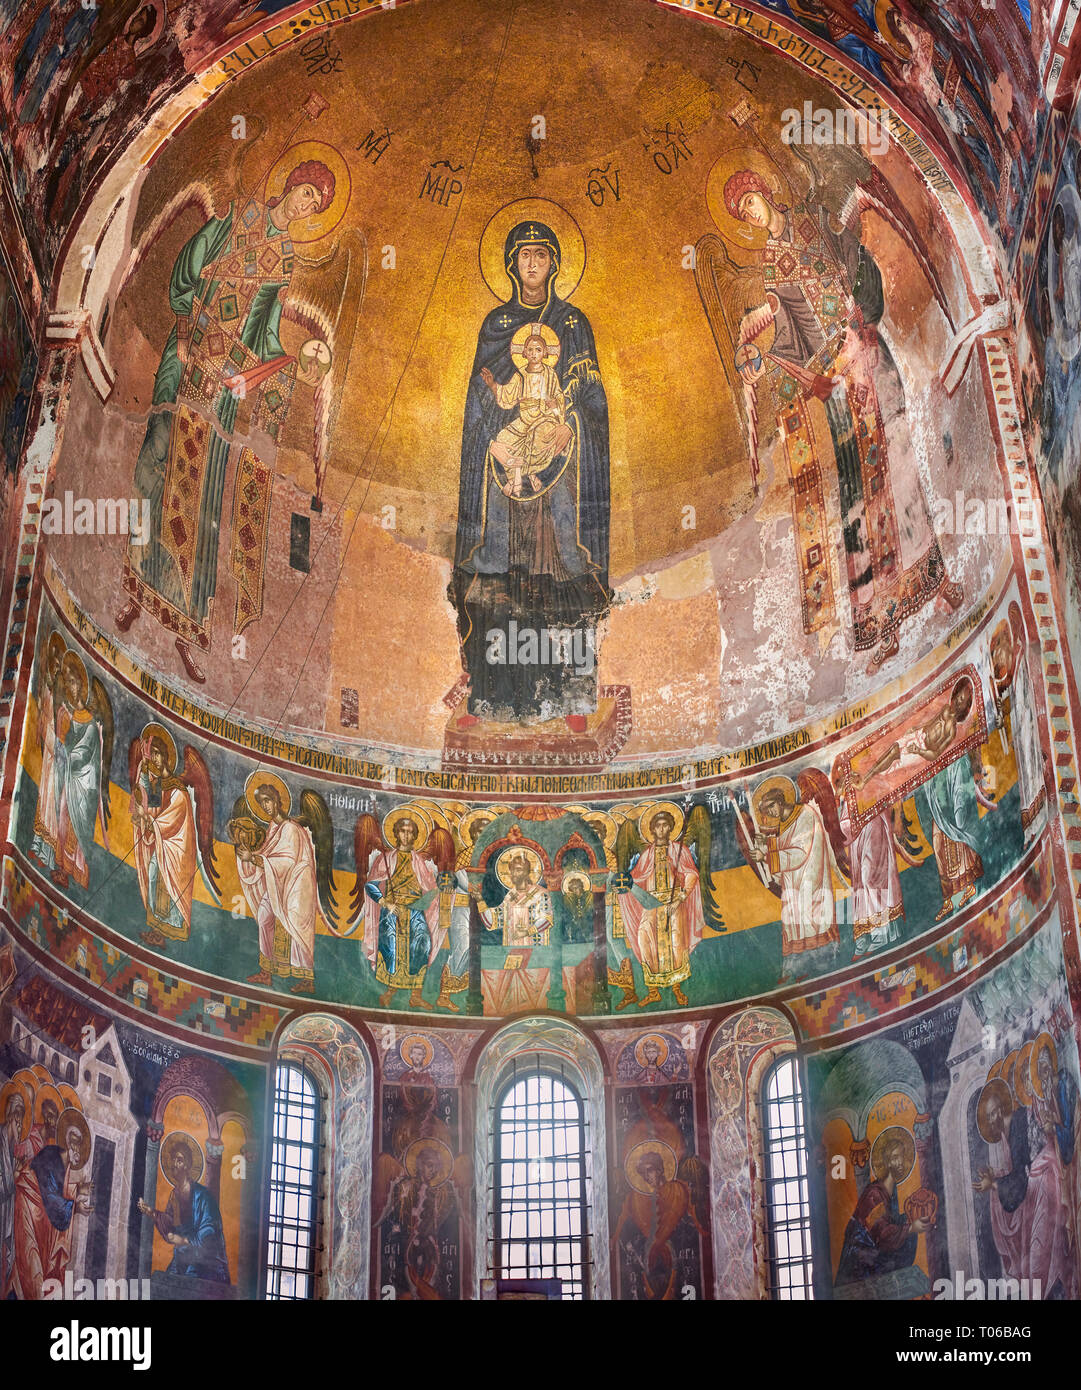 fotos-imagenes-del-mosaico-bizantino-de-la-theotokos-representa-a-la-virgen-maria-madre-de-dios-y-el-nino-1126-1130-en-el-abside-de-la-gelati-t06bag.jpg